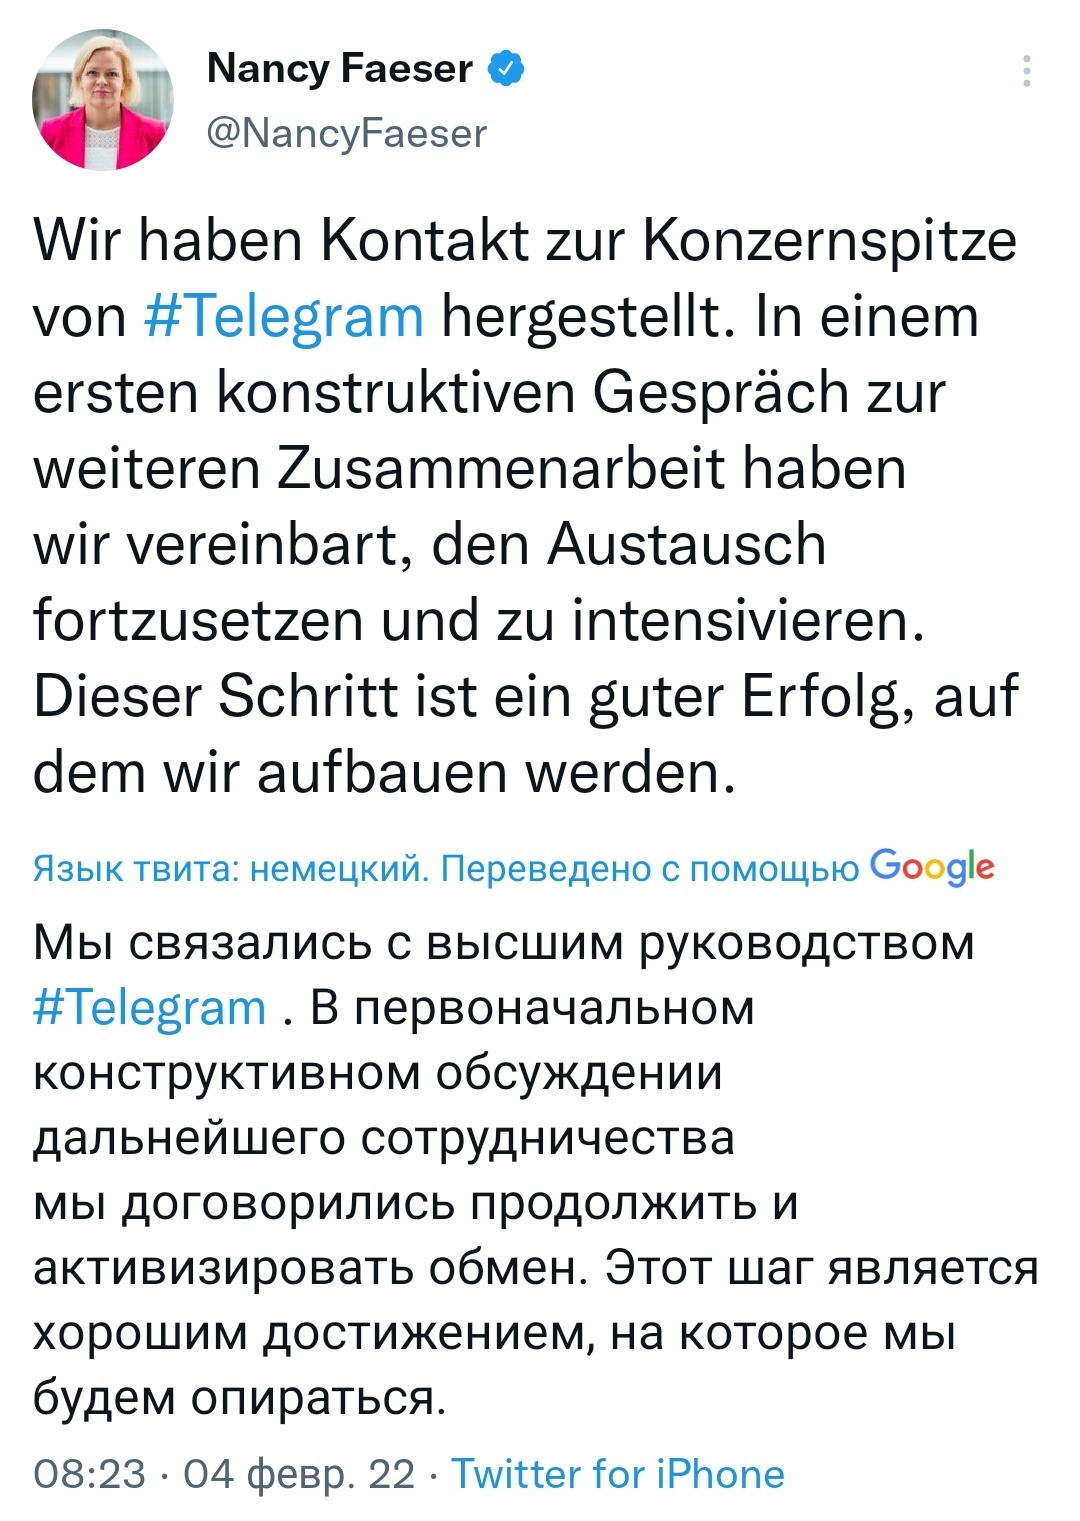 МВД Германии начало сотрудничать с Telegram Глава МВД ФРГ Нэнси Фезер объявила об этом в Twitter: «Нам удалась наладить контакт с руководством Telegram.